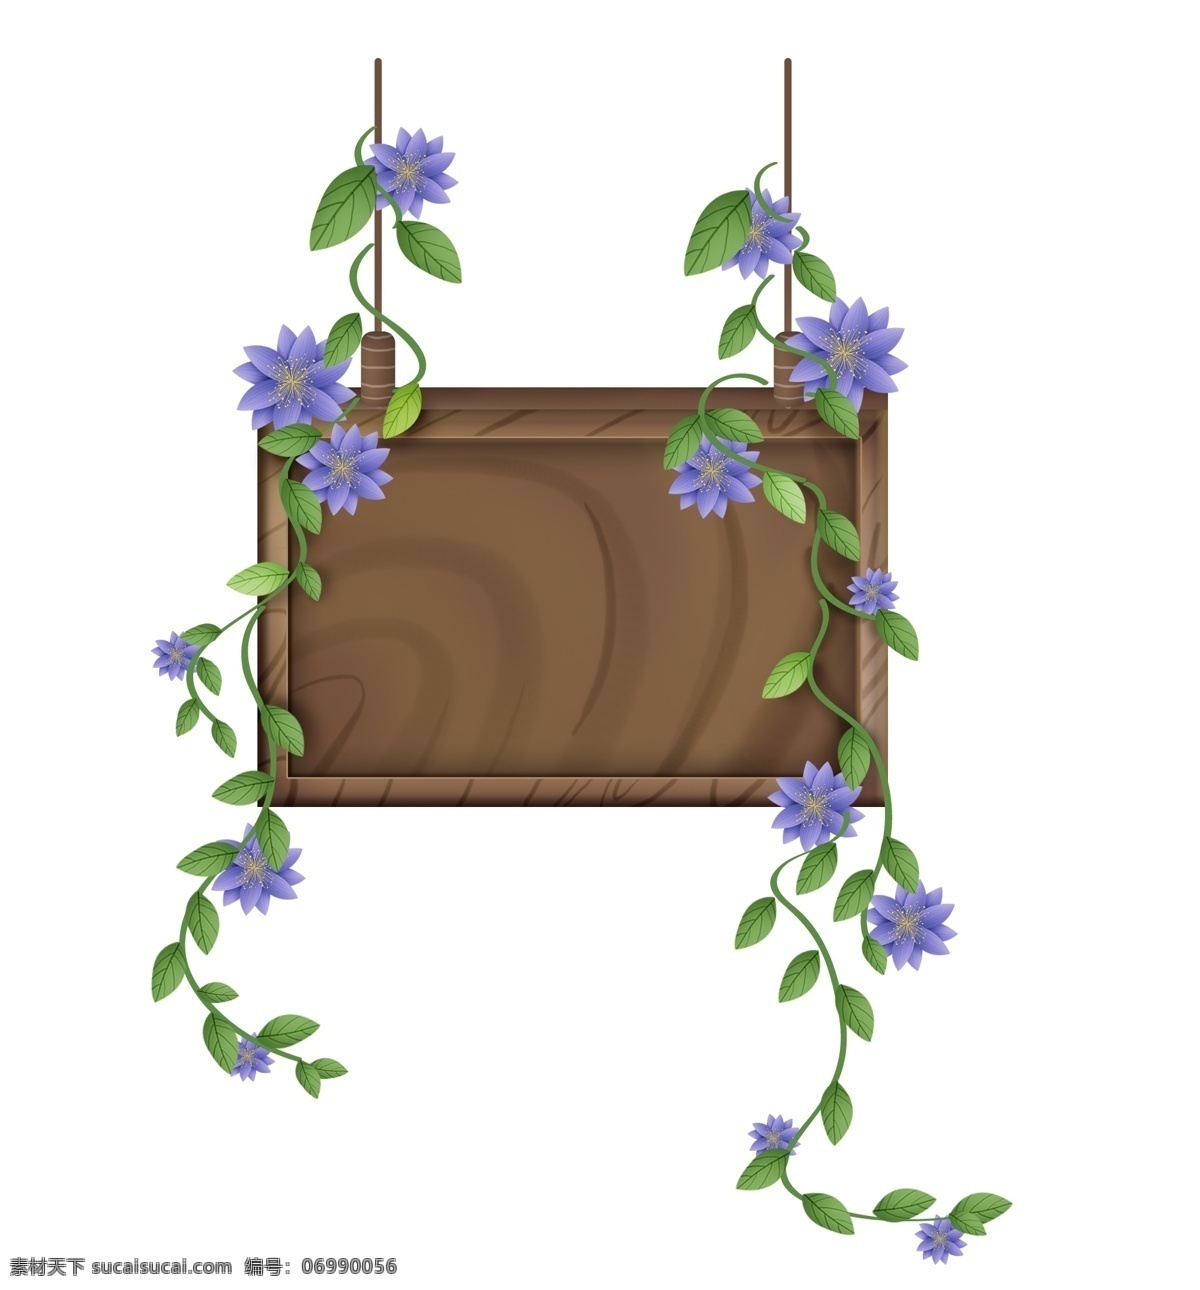 春天 木纹 花朵 提示牌 绿色 春季 花卉 植物 立体 文字 框 春天文字框 叶子 标题 春天标题框